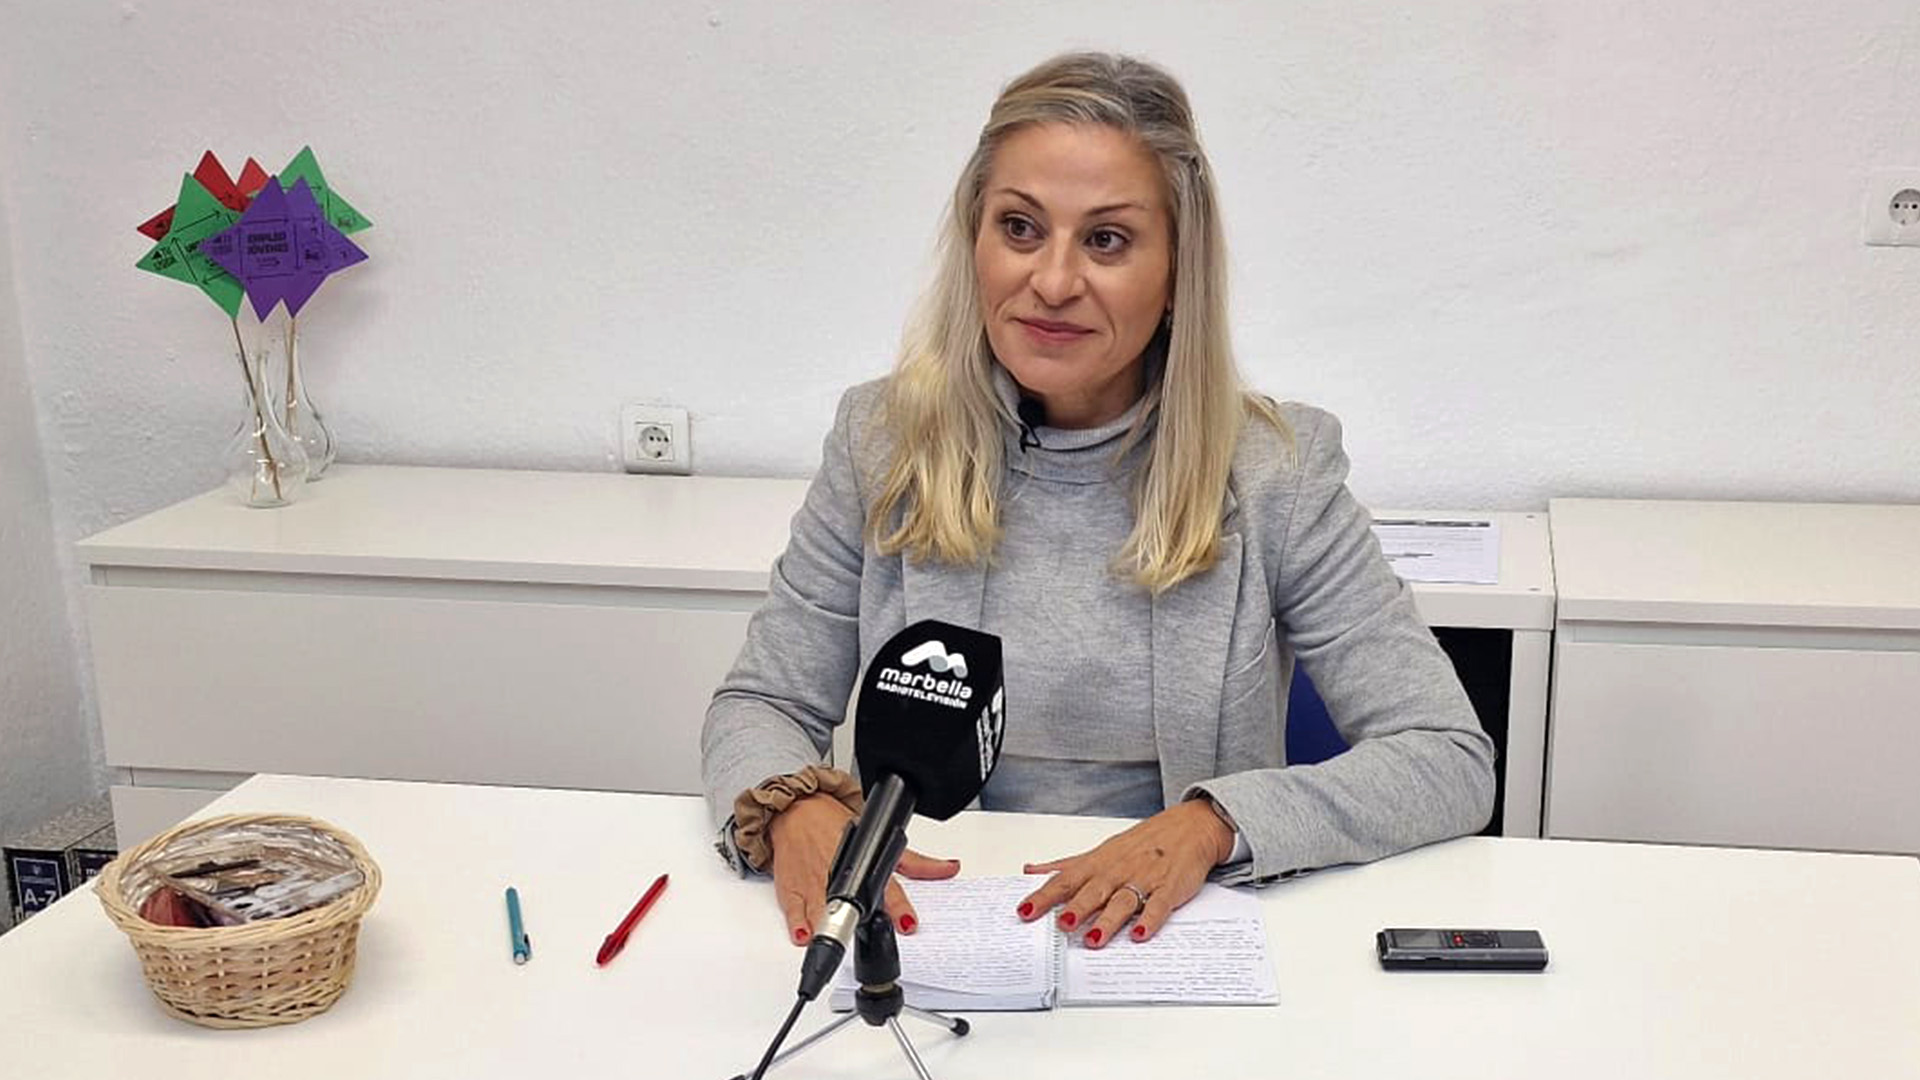 La candidata de izquierdas, Victoria Morales, acusa al PP de gobernar con poca transparencia